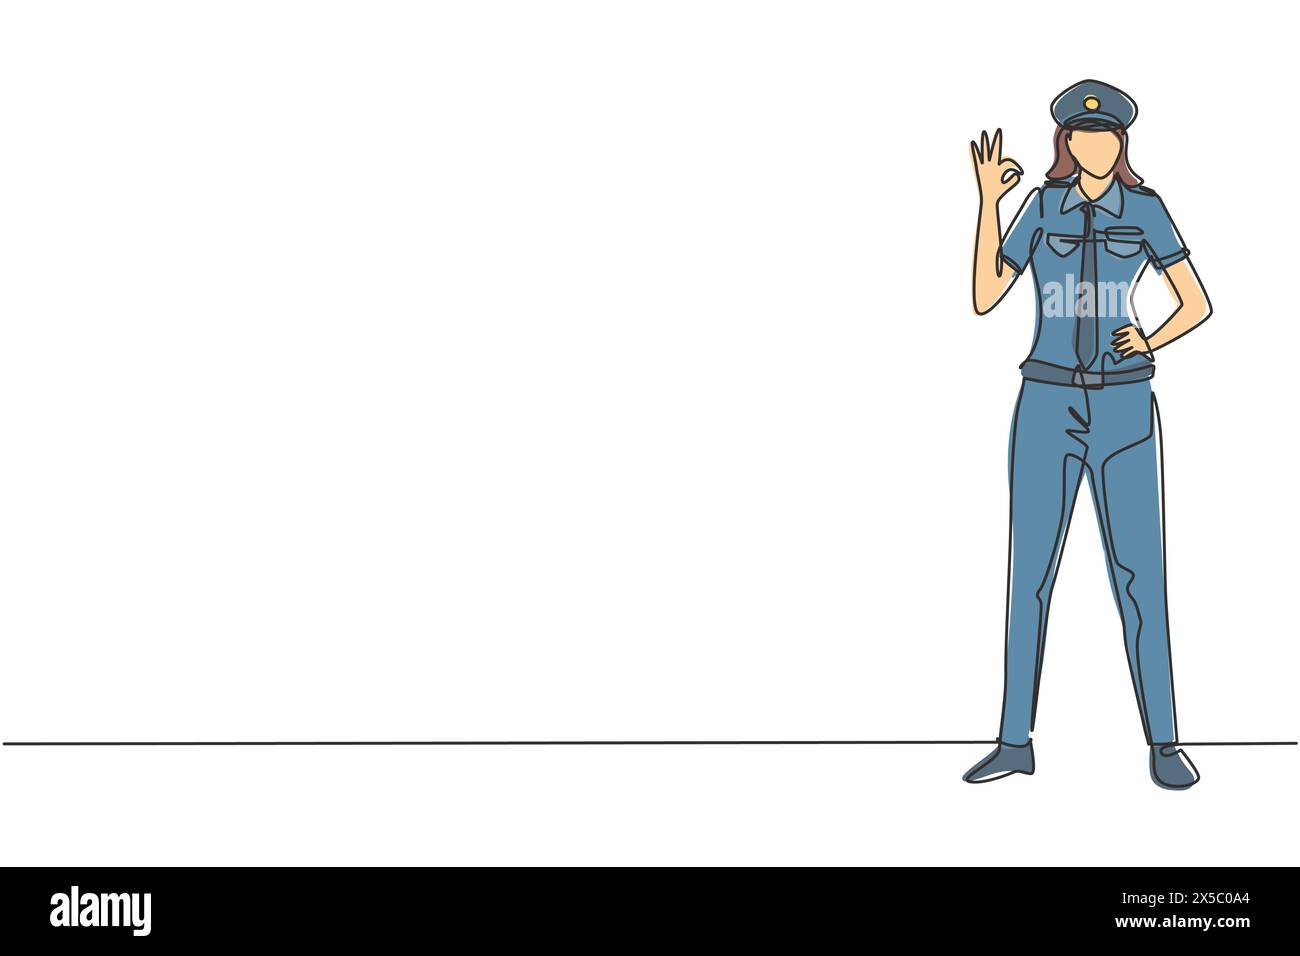 Un disegno su una sola linea di pilota donna sta con un gesto okay e uniforme completa serve i passeggeri dell'aereo volare a destinazione. Moderno e continuo Illustrazione Vettoriale